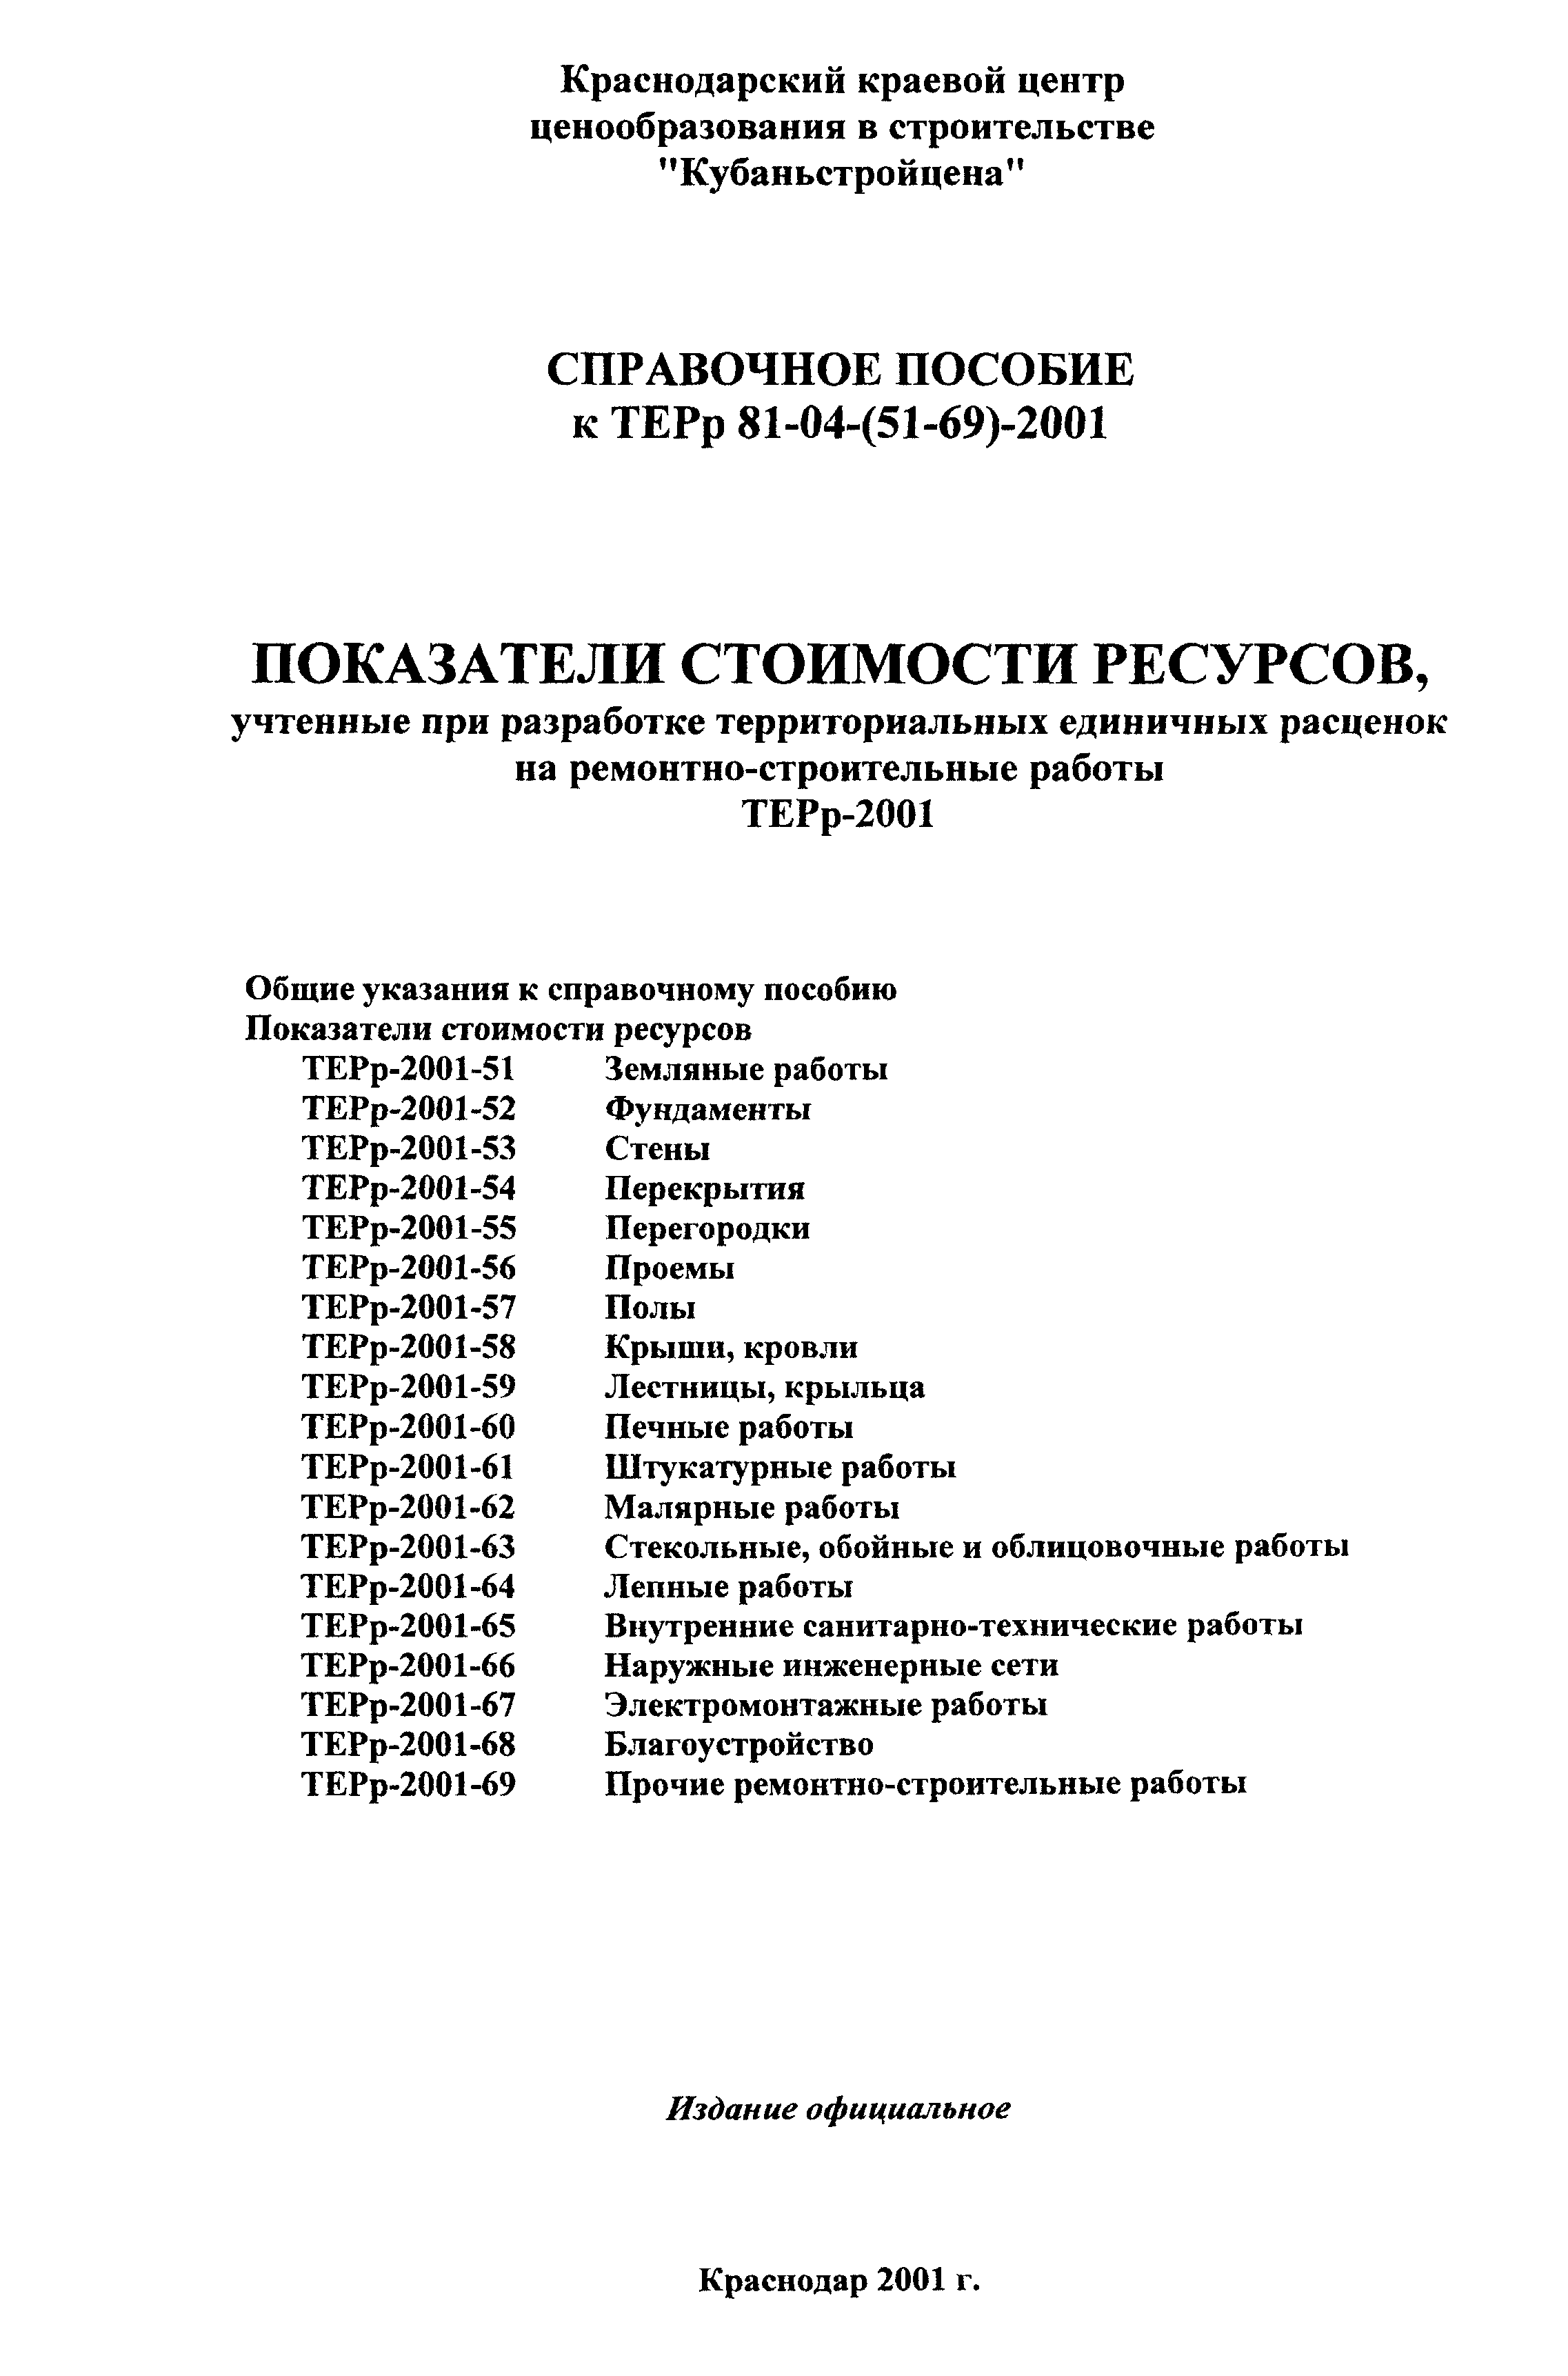 Справочное пособие к ТЕРр 81-04-52-2001